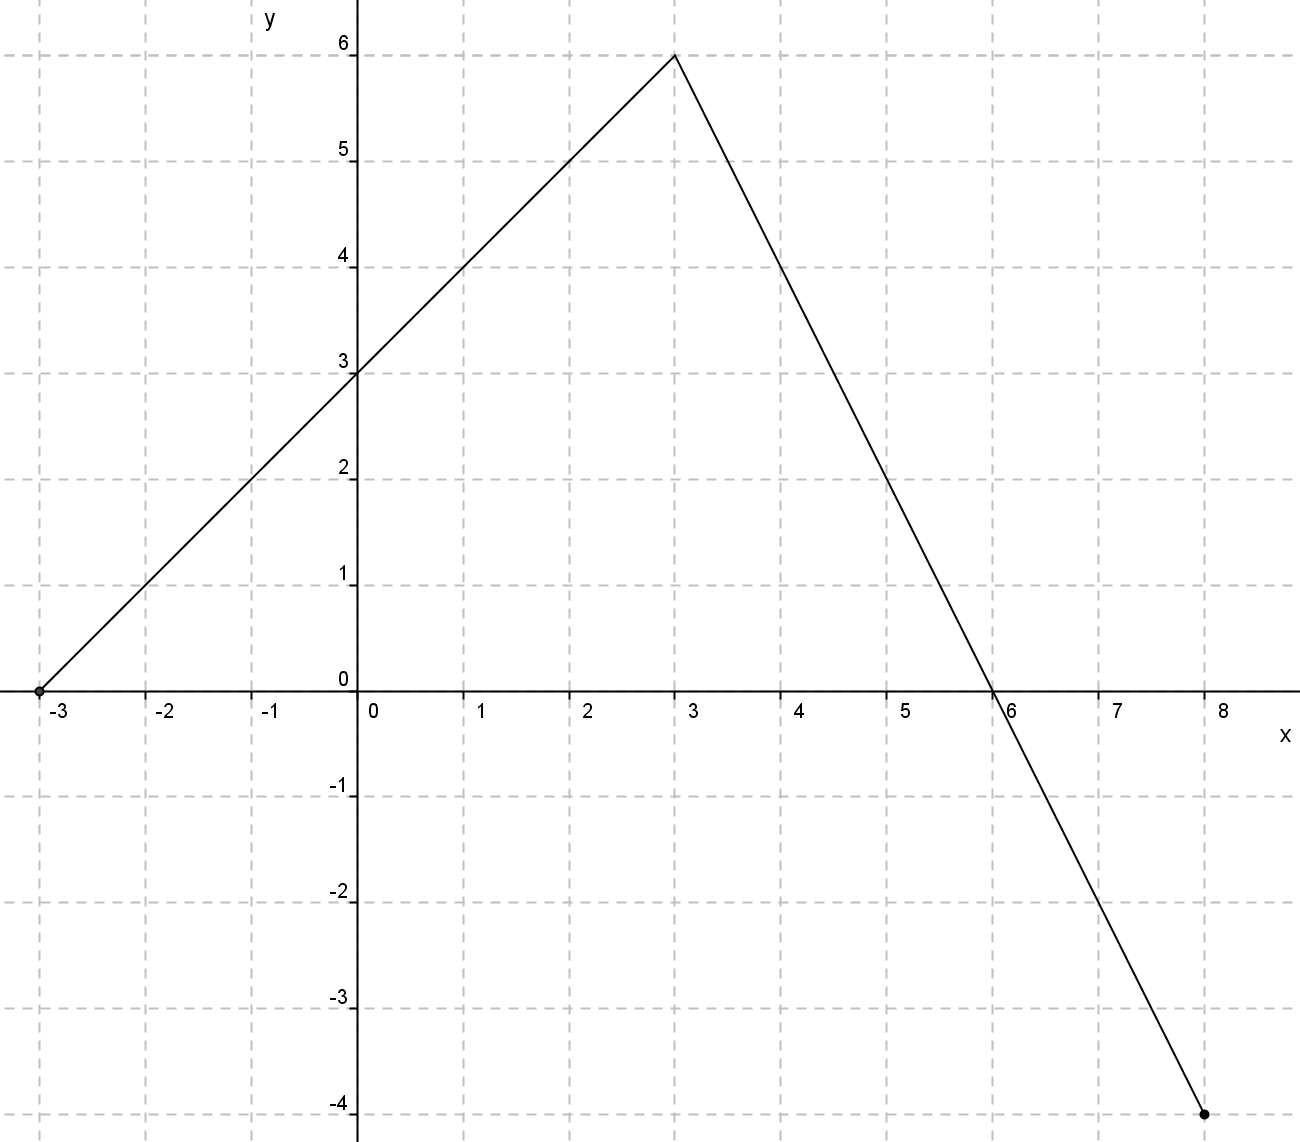 Στο παραπάνω σύστημα συντεταγμένων δίνεται η γραφική παράσταση μιας συνάρτησης f. α) Nα προσδιορίσετε το πεδίο ορισμού της συνάρτησης.